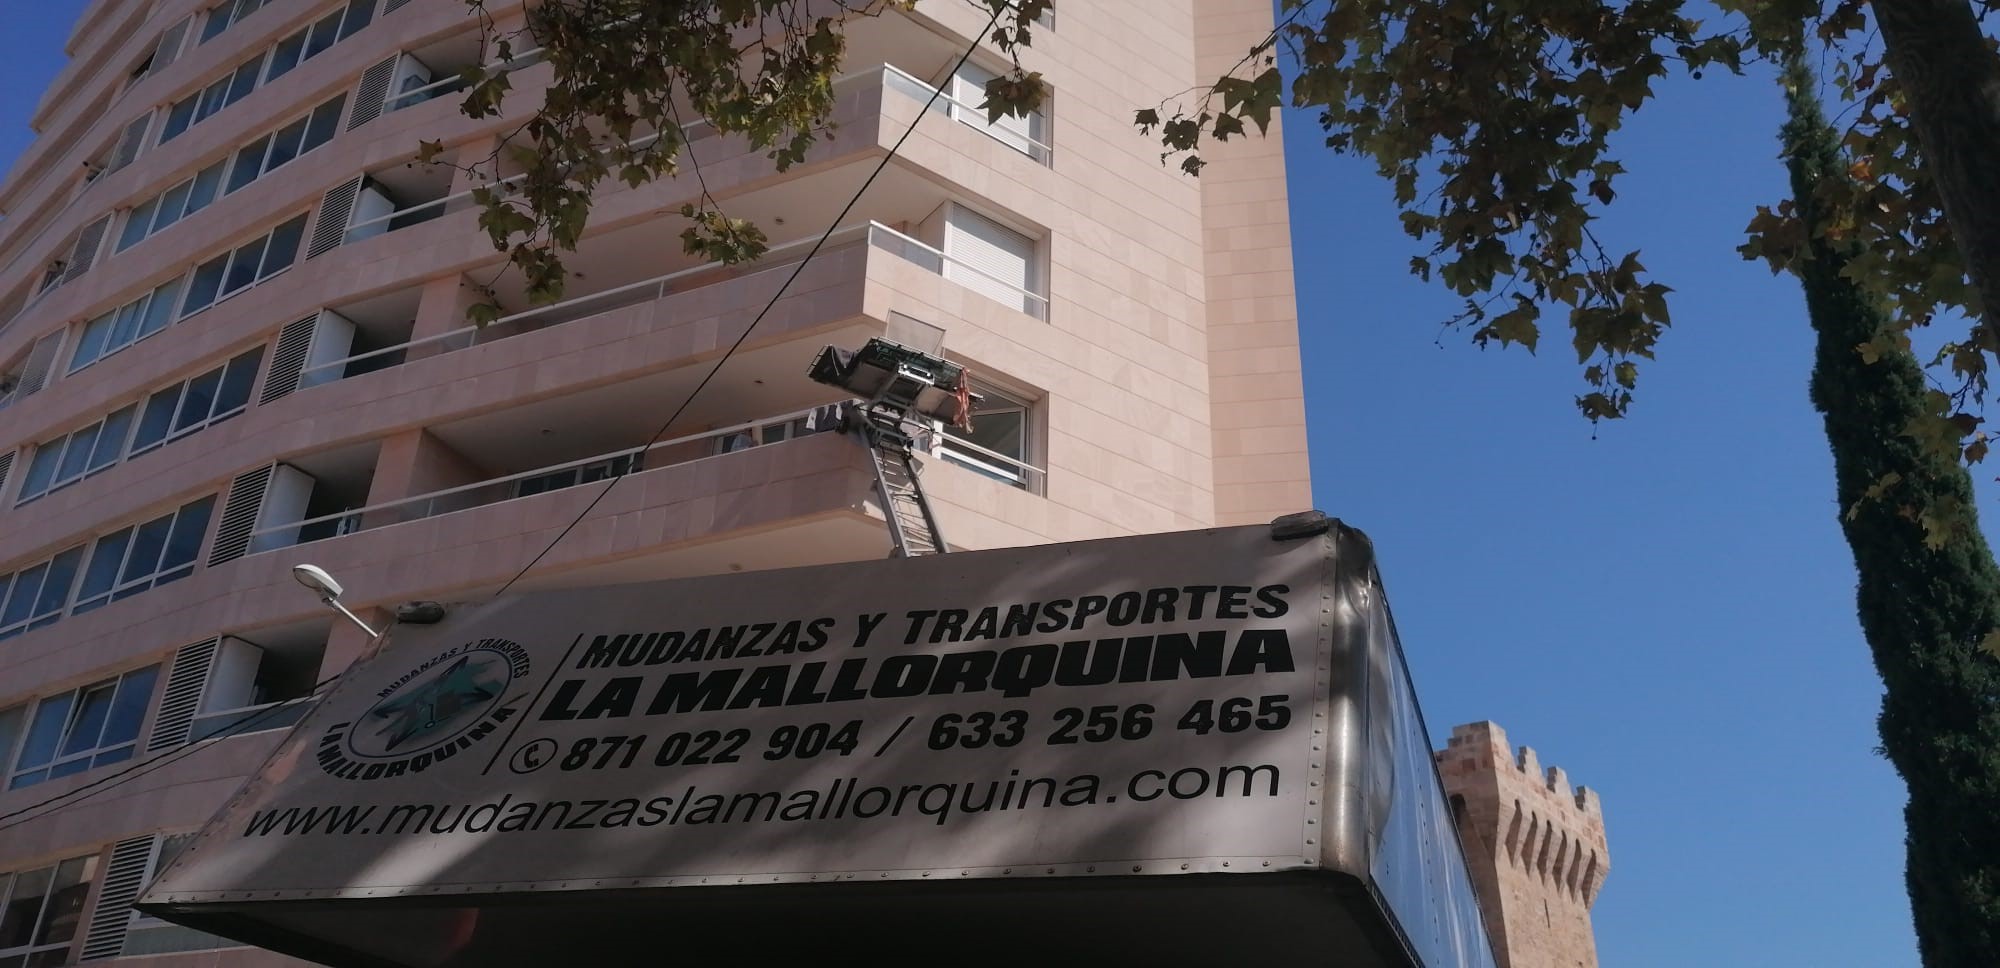 Images Mudanzas y Transportes La Mallorquina